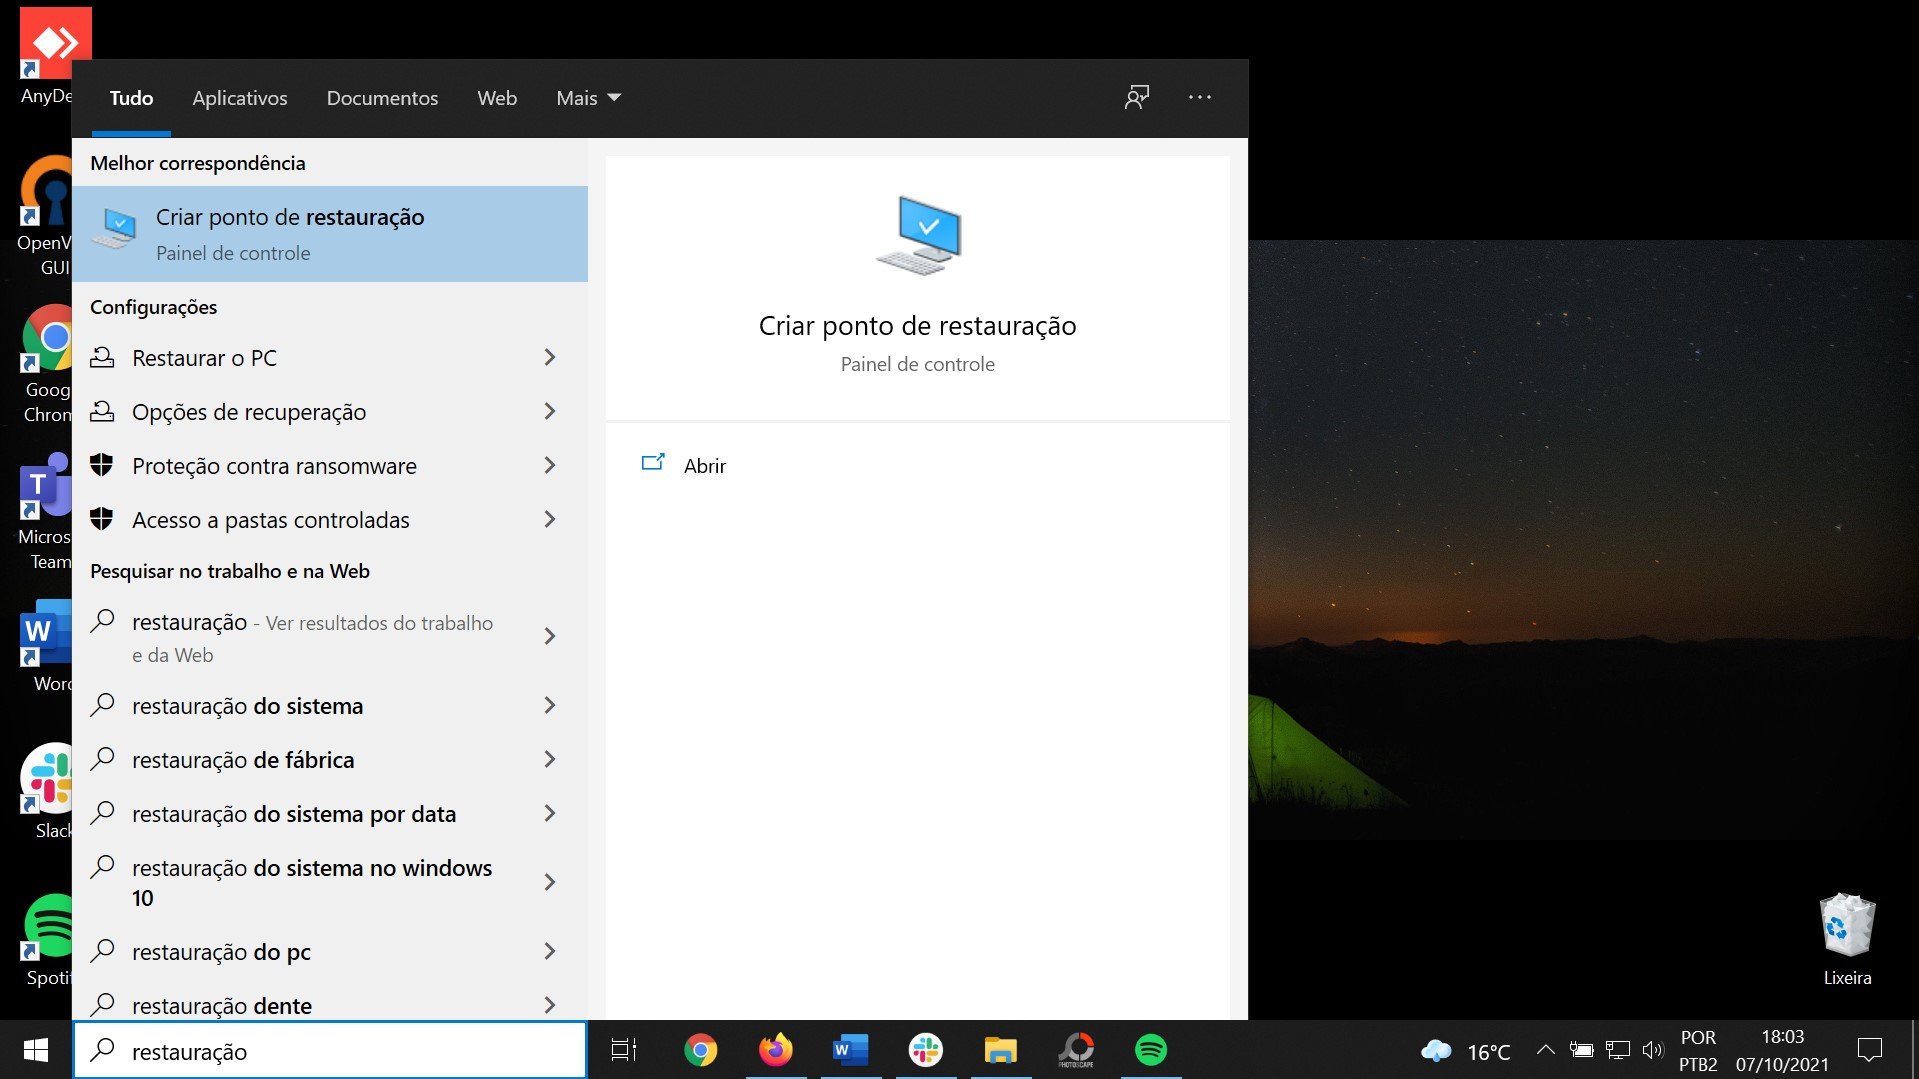 Ativador Windows 10 Download Gratuito de Guia Passo a Passo 2024 PT-BR